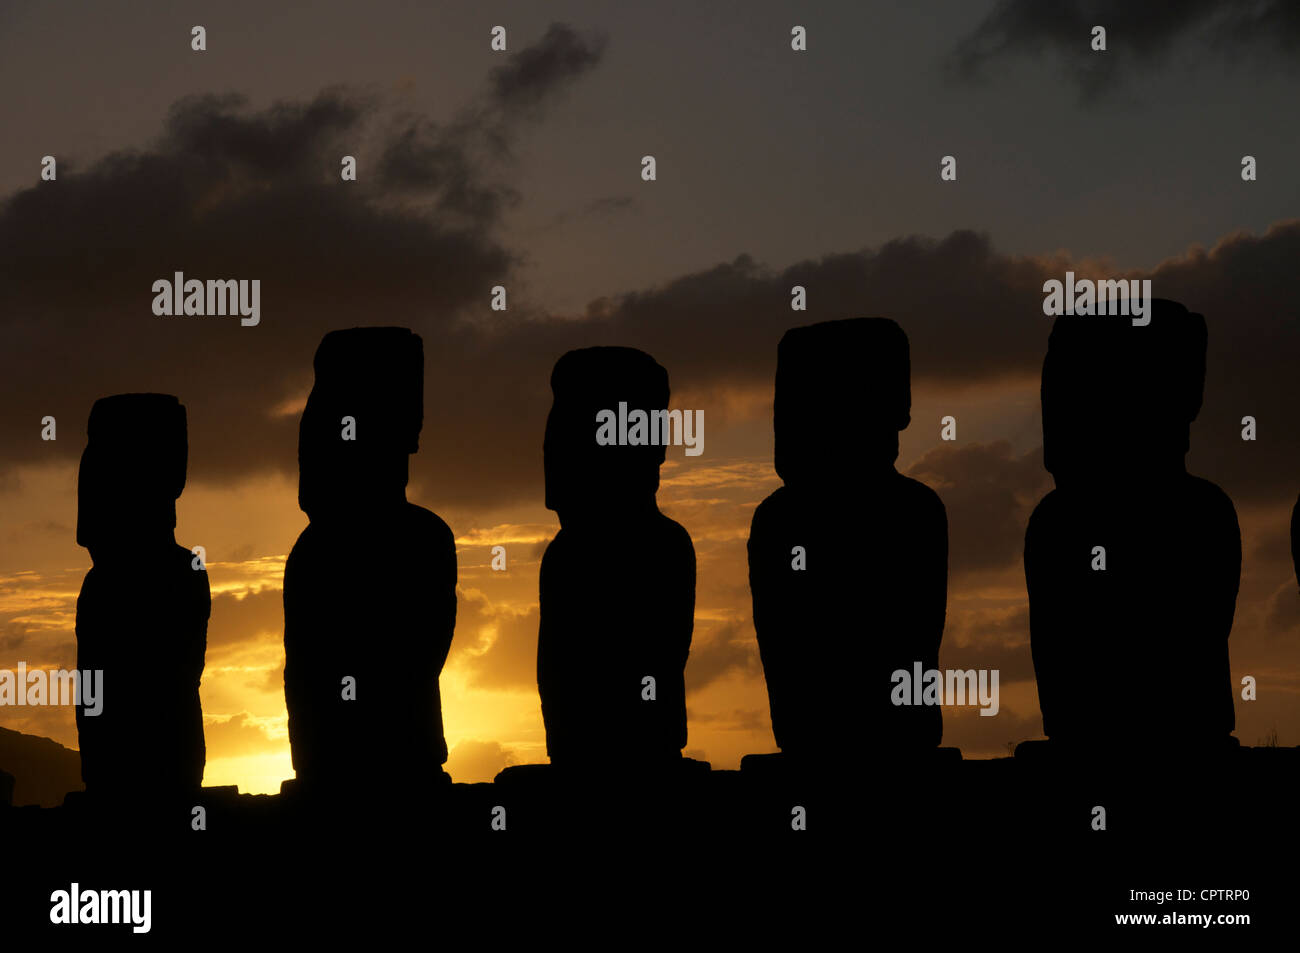 Five Moai at sunrise Ahu Tongarika Easter Island Chile Stock Photo